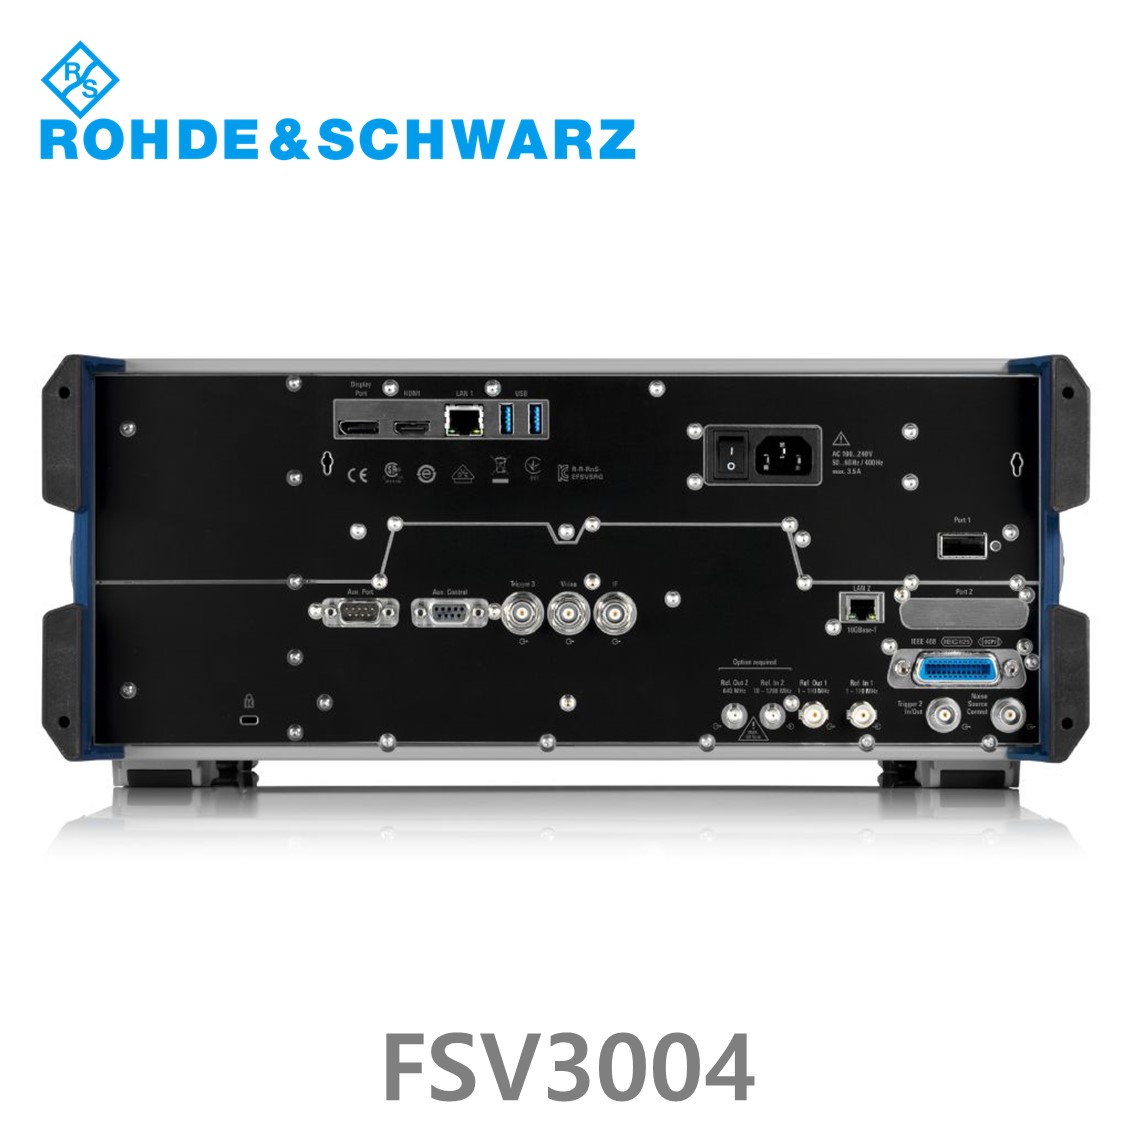 [ 로데슈바르즈 ] FSV3004  10Hz~4GHz, < –114 dBc, < –162 dBm/Hz, 200 MHz (1330.5000.04) 스펙트럼 분석기, 신호분석기